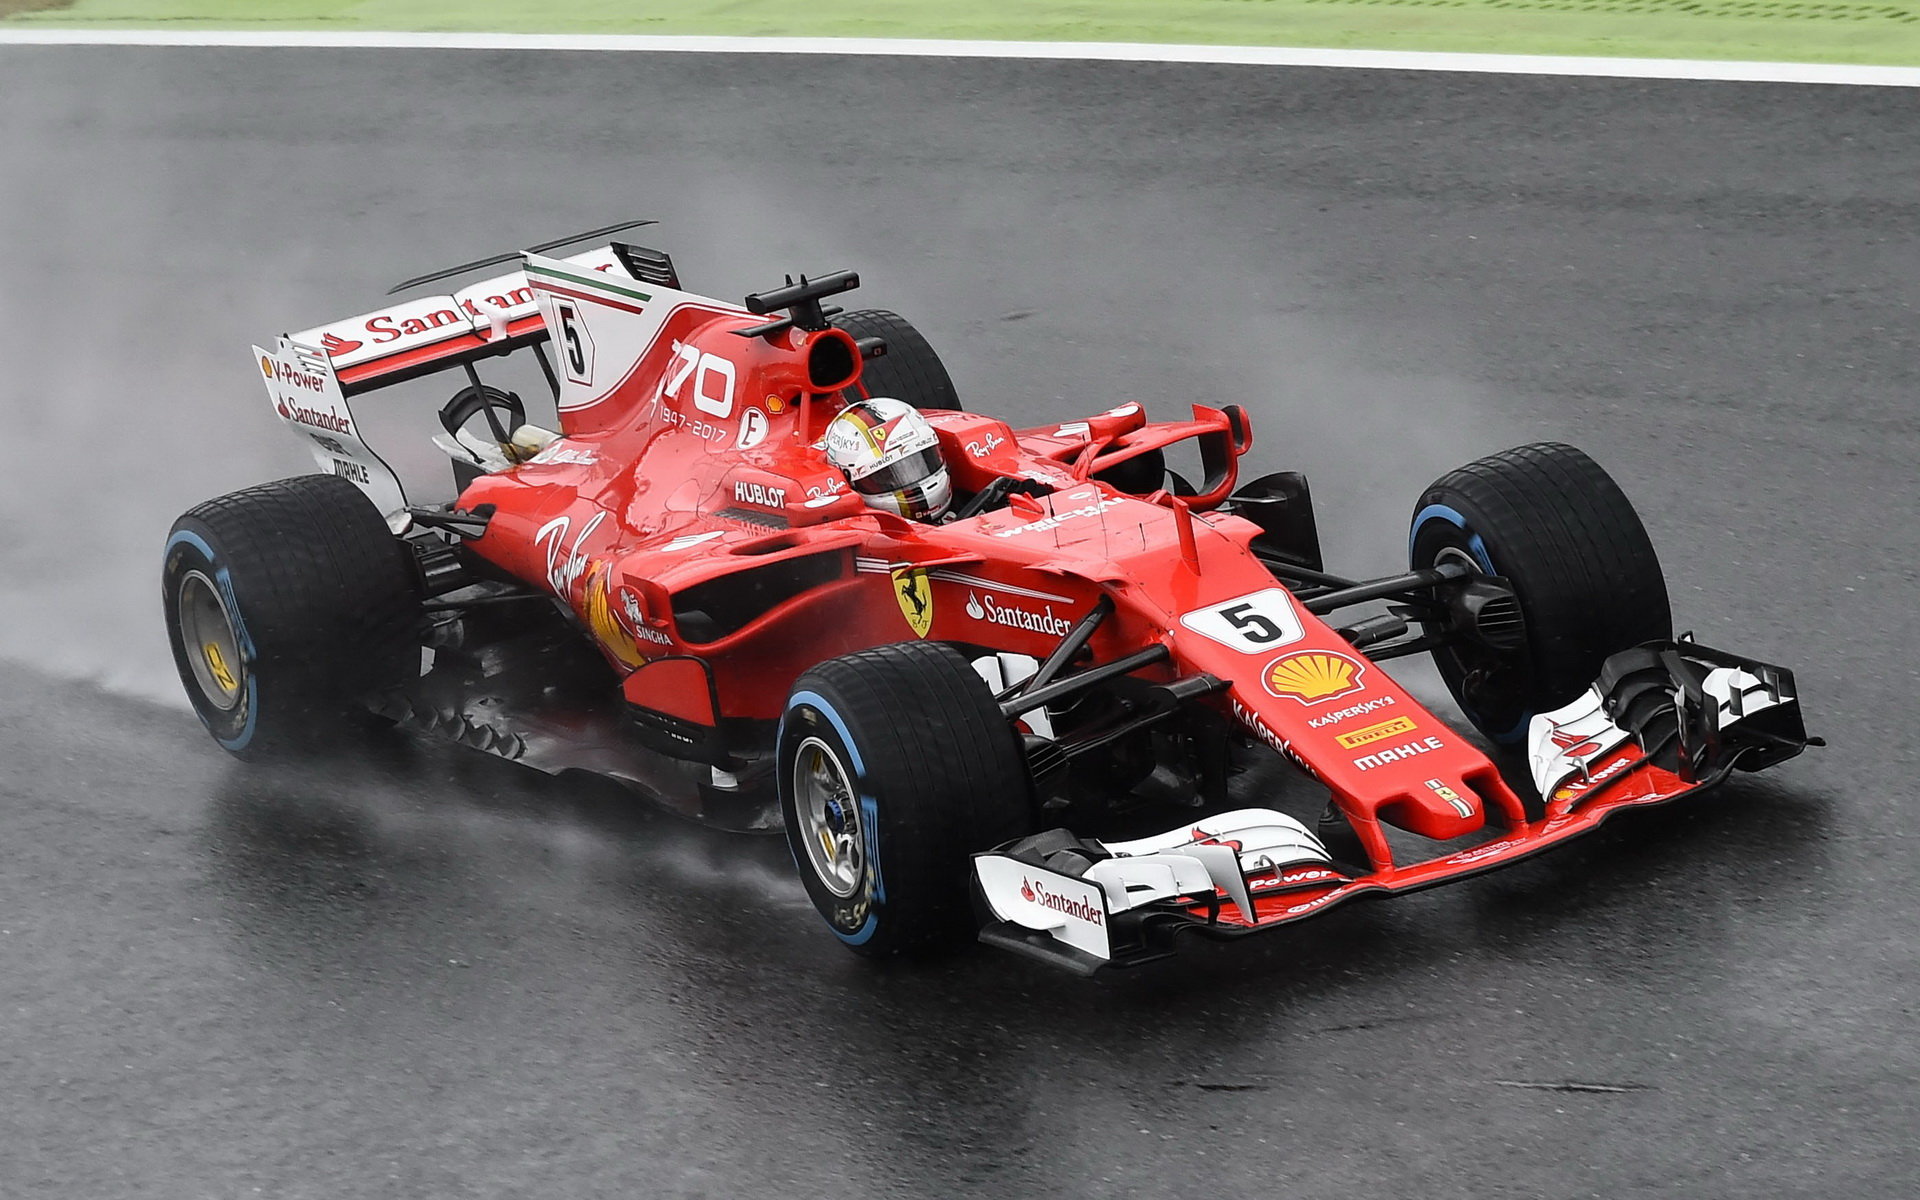 Sebastian Vettel za deštivé kvalifikace v Itálii